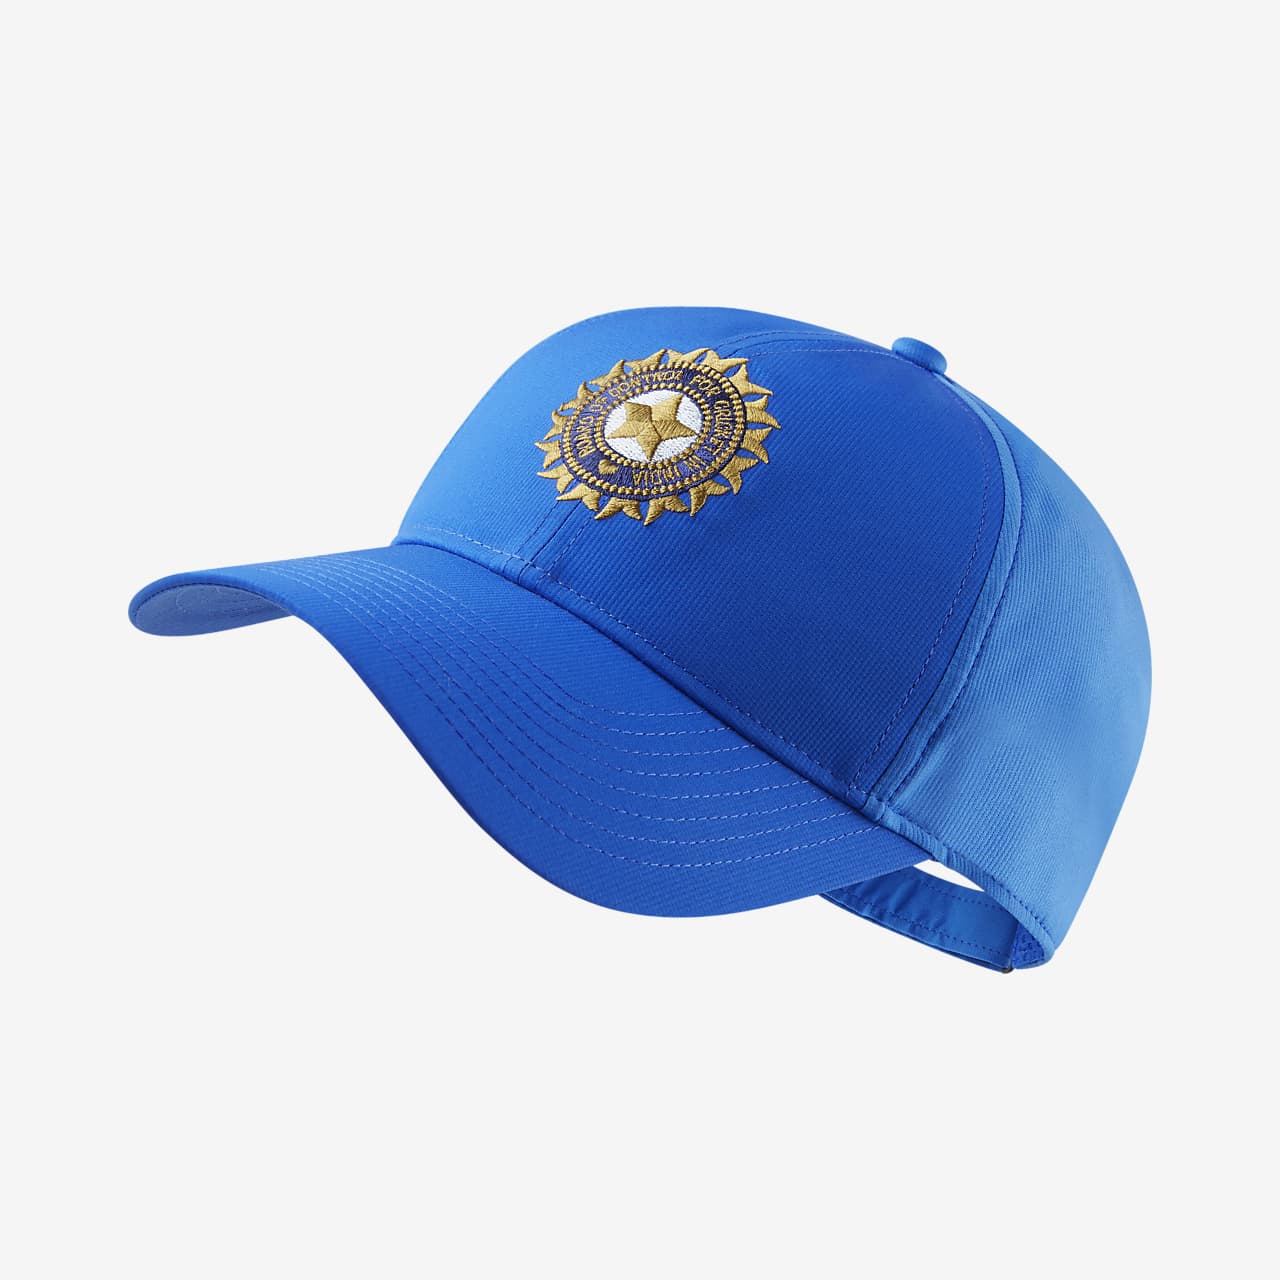 nike india cricket hat